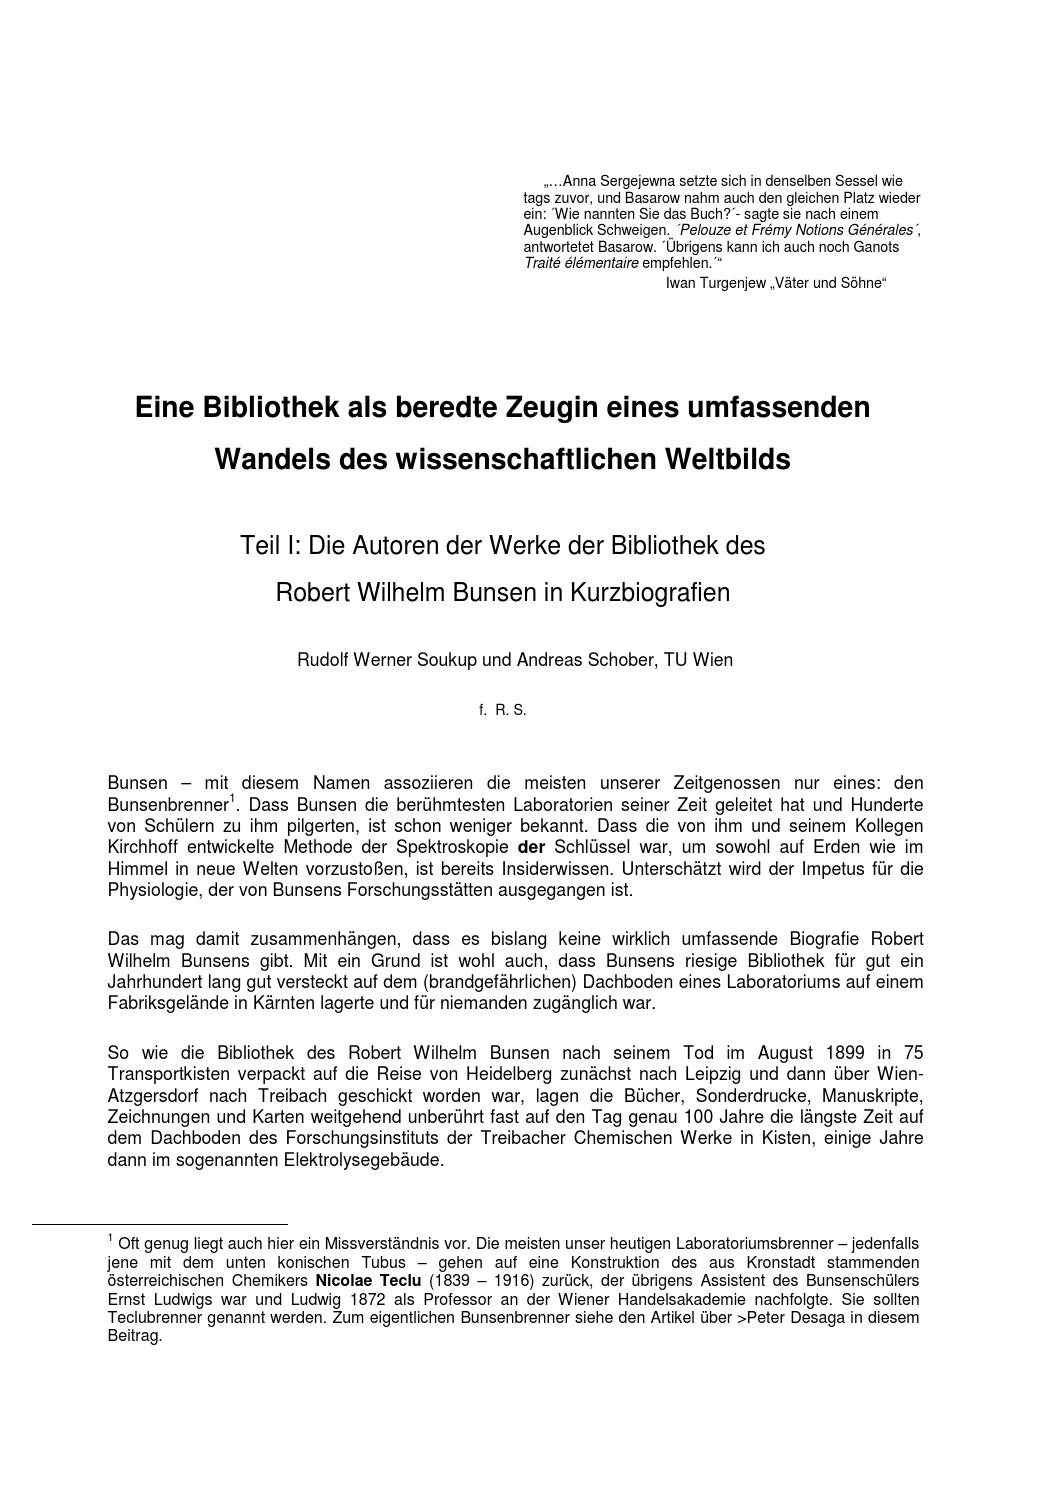 Mein Schöner Garten Zeitschrift Genial Autoren Der Bunsenbibliothek Teil 1 by Auer Von Welsbach